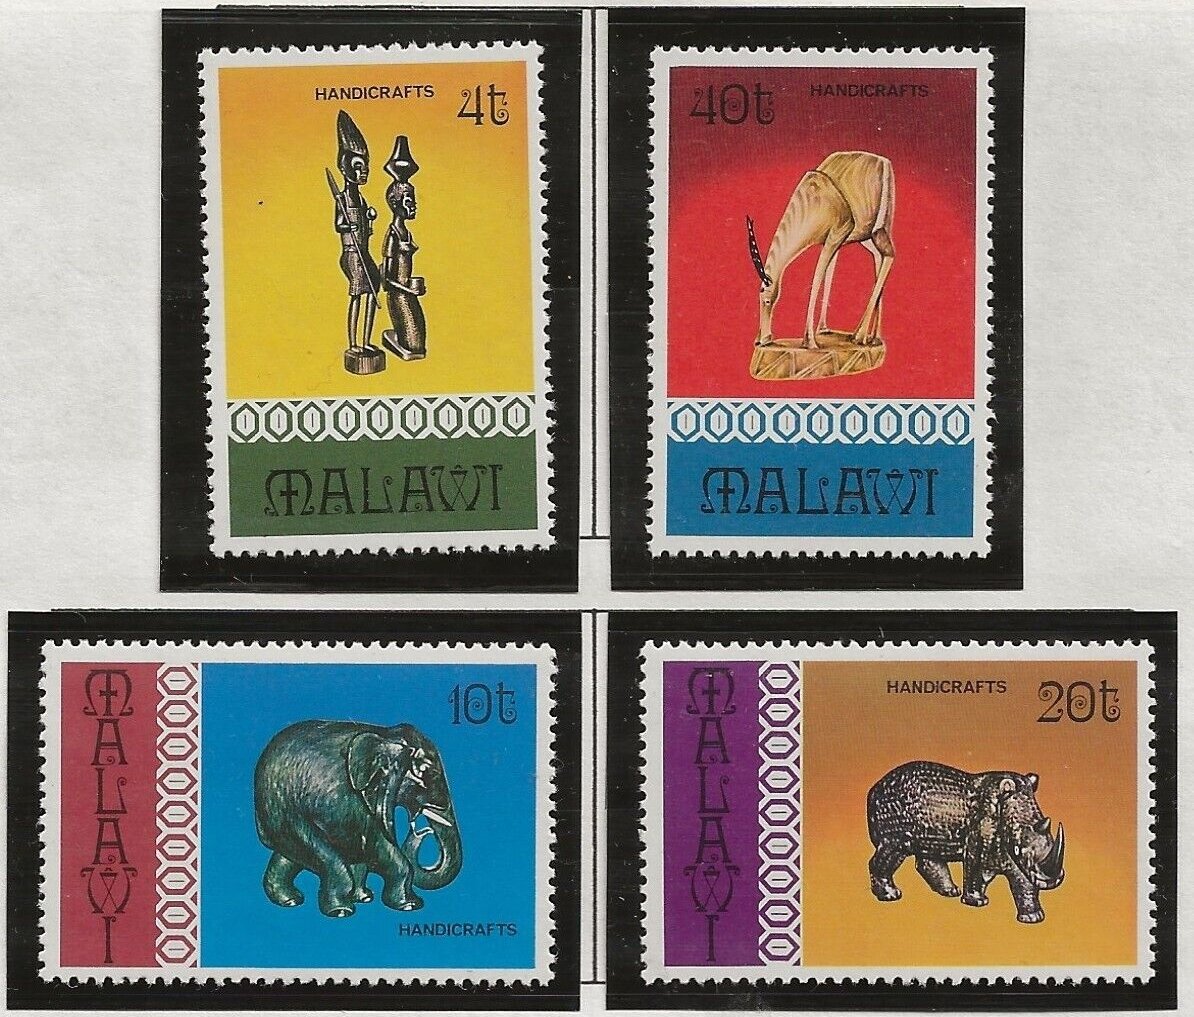 Malawi 1977 - Arta, sculpturi, serie neuzata